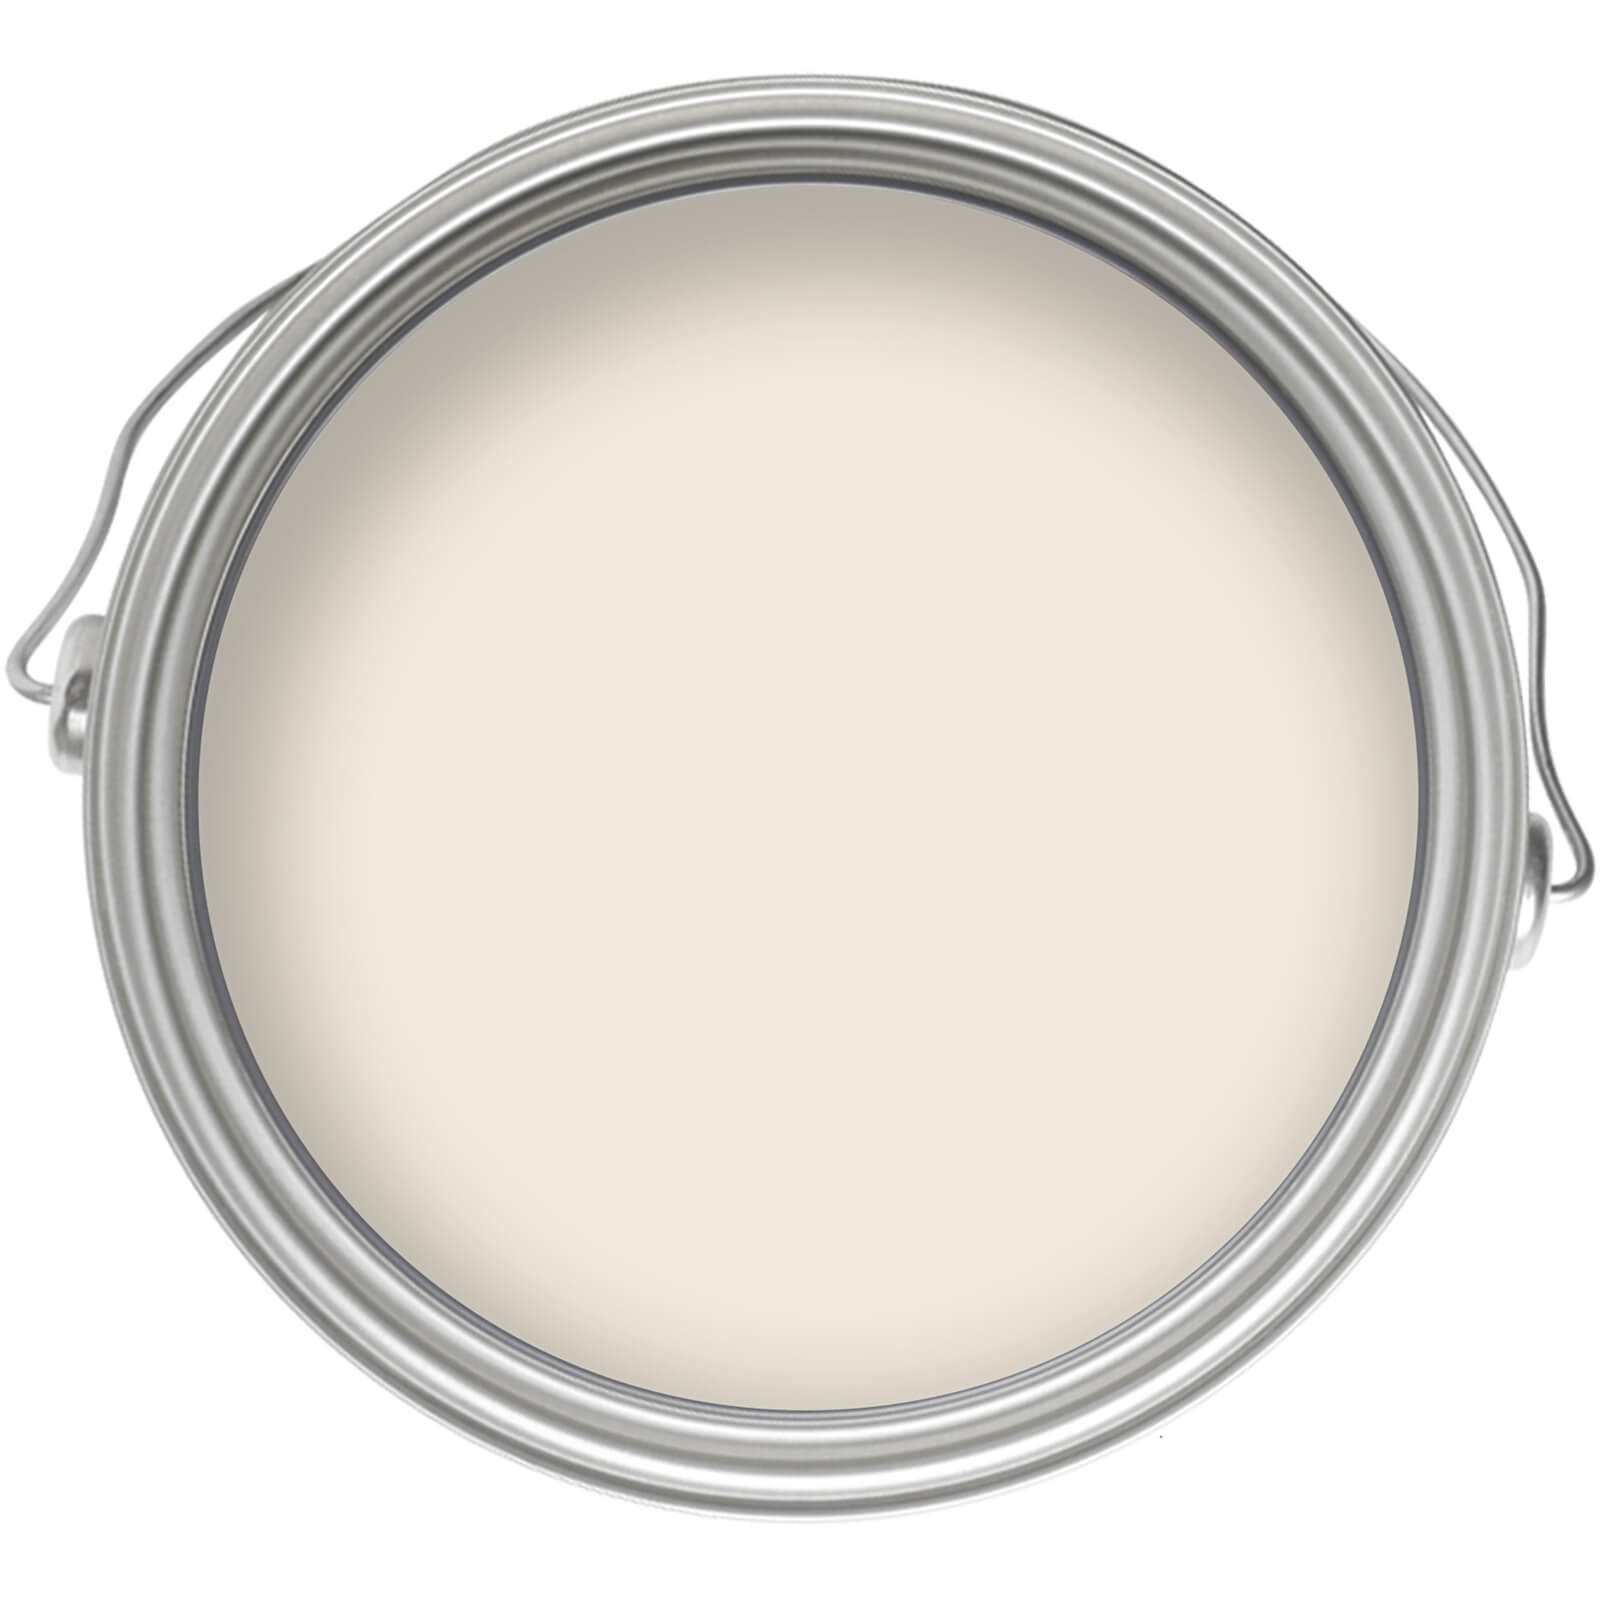 Homebase Matt Emulsion Paint Opal Cream - 5L